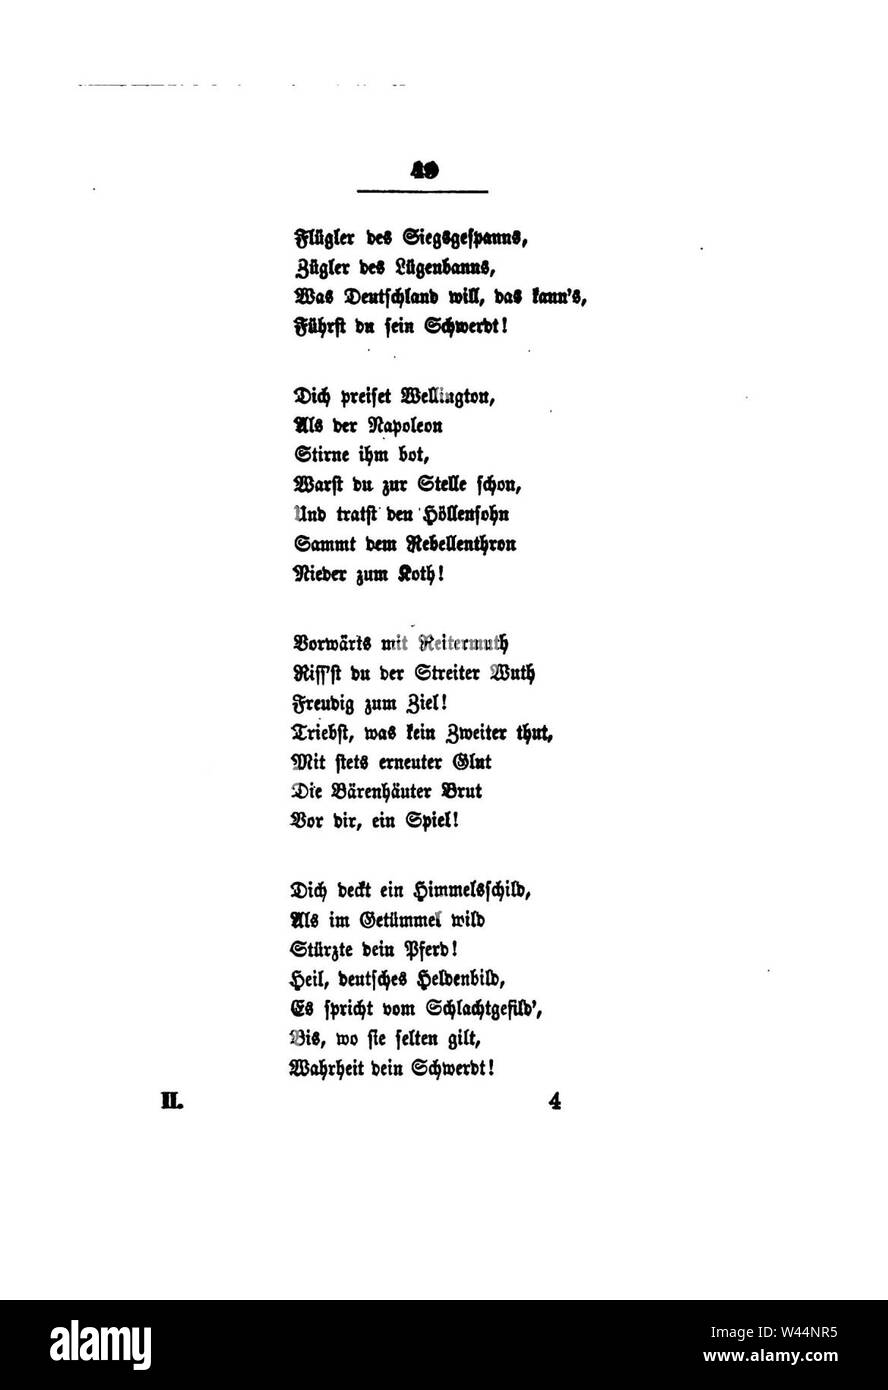 Clemens Brentano's gesammelte Schriften II 049. Stock Photo